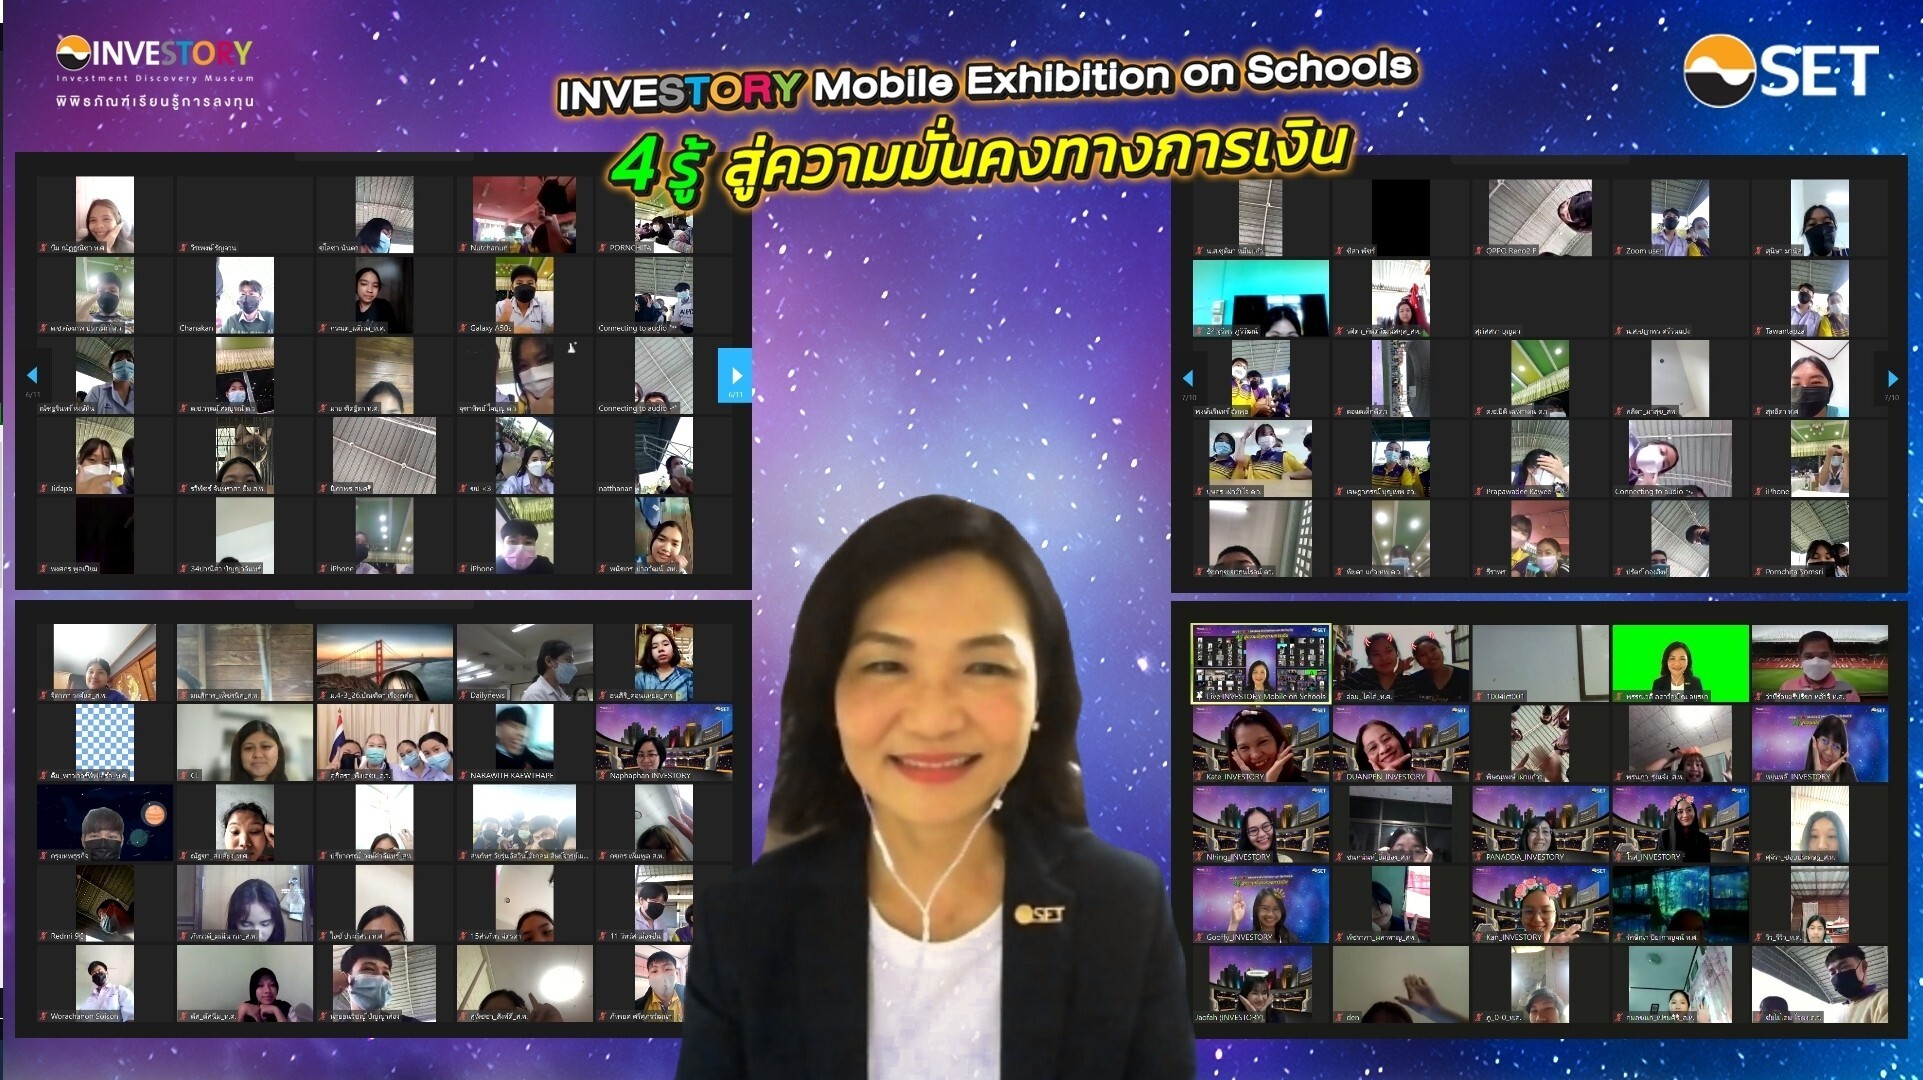 ตลาดหลักทรัพย์แห่งประเทศไทย มุ่งมั่นปลูกฝังวินัยการออมและส่งเสริมความรู้ด้านการวางแผนการเงินให้แก่เยาวชน เดินหน้าโครงการ "INVESTORY Mobile Exhibition on Schools" ในรูปแบบออนไลน์ ยกความรู้จาก "INVESTORY พิพิธภัณฑ์เรียนรู้การลงทุน" สู่สถานศึกษา